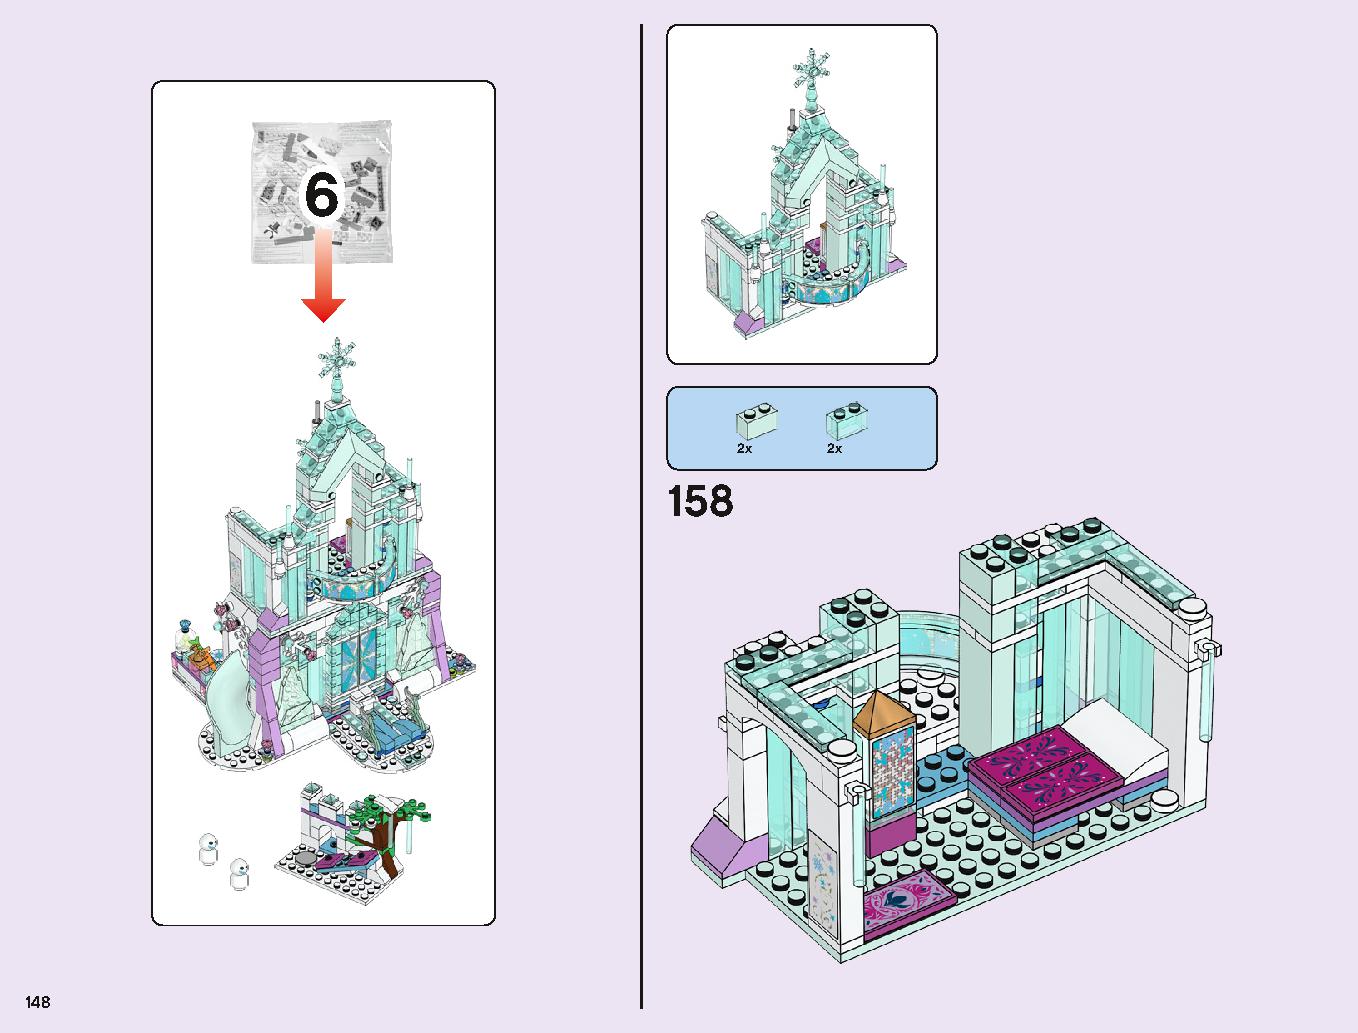 アナと雪の女王 “アイスキャッスル・ファンタジー” 43172 レゴの商品情報 レゴの説明書・組立方法 148 page